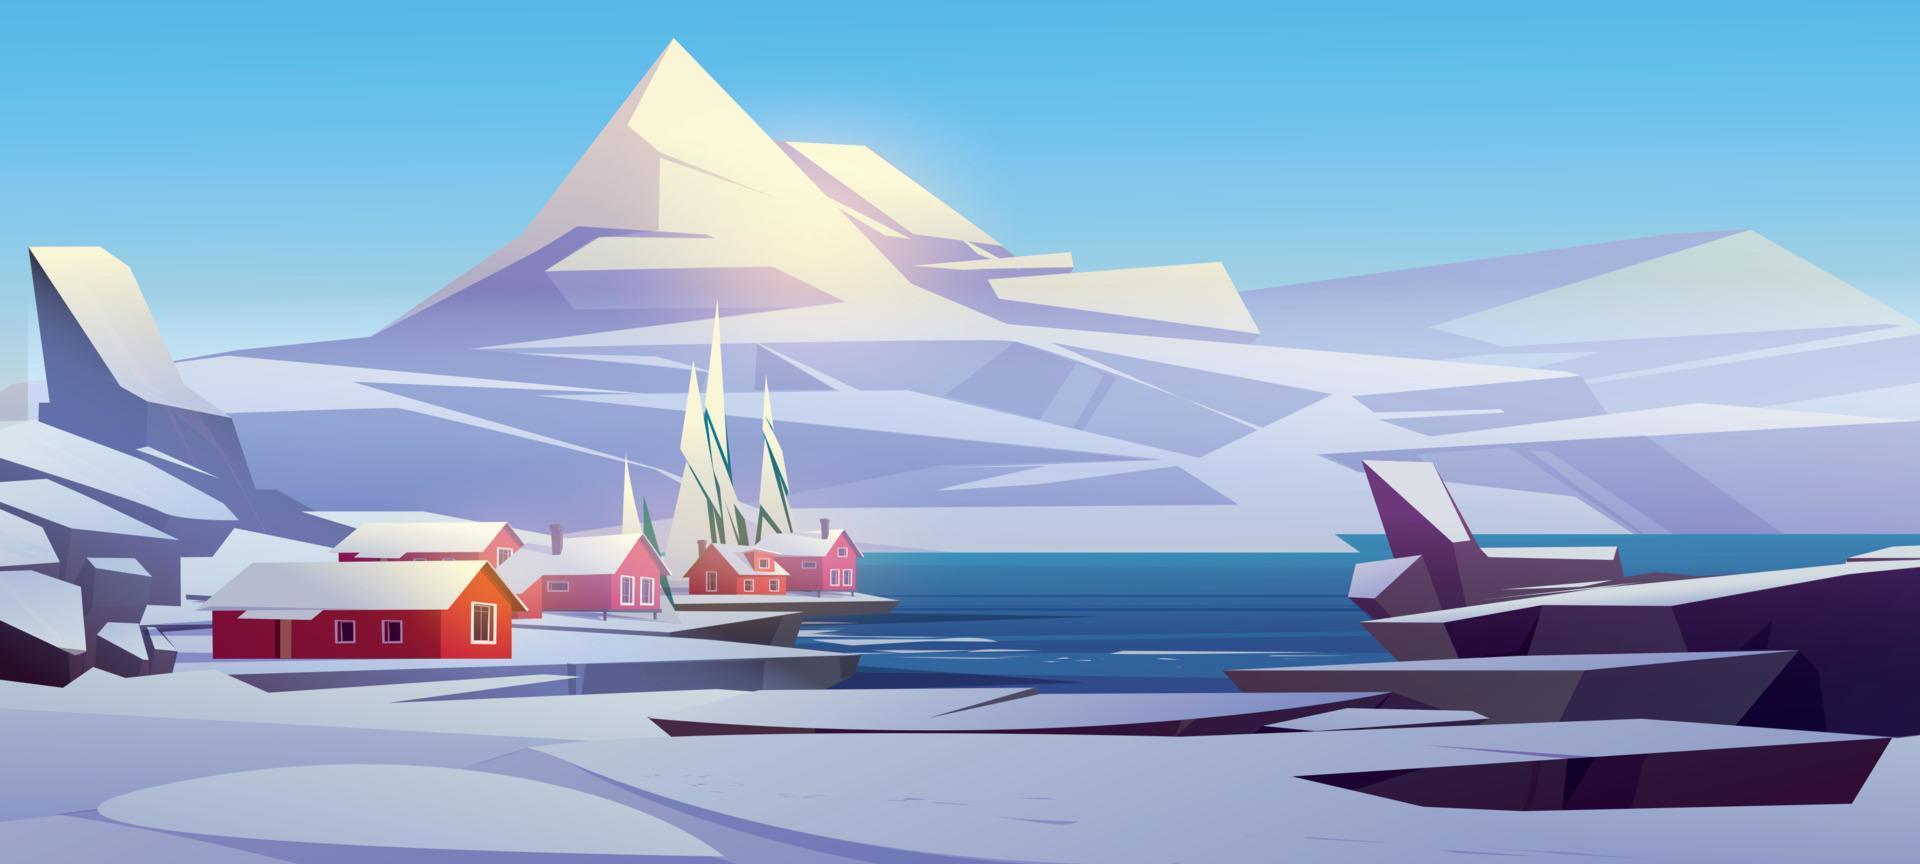 Winter landscape scandinavian nordic village scene vector